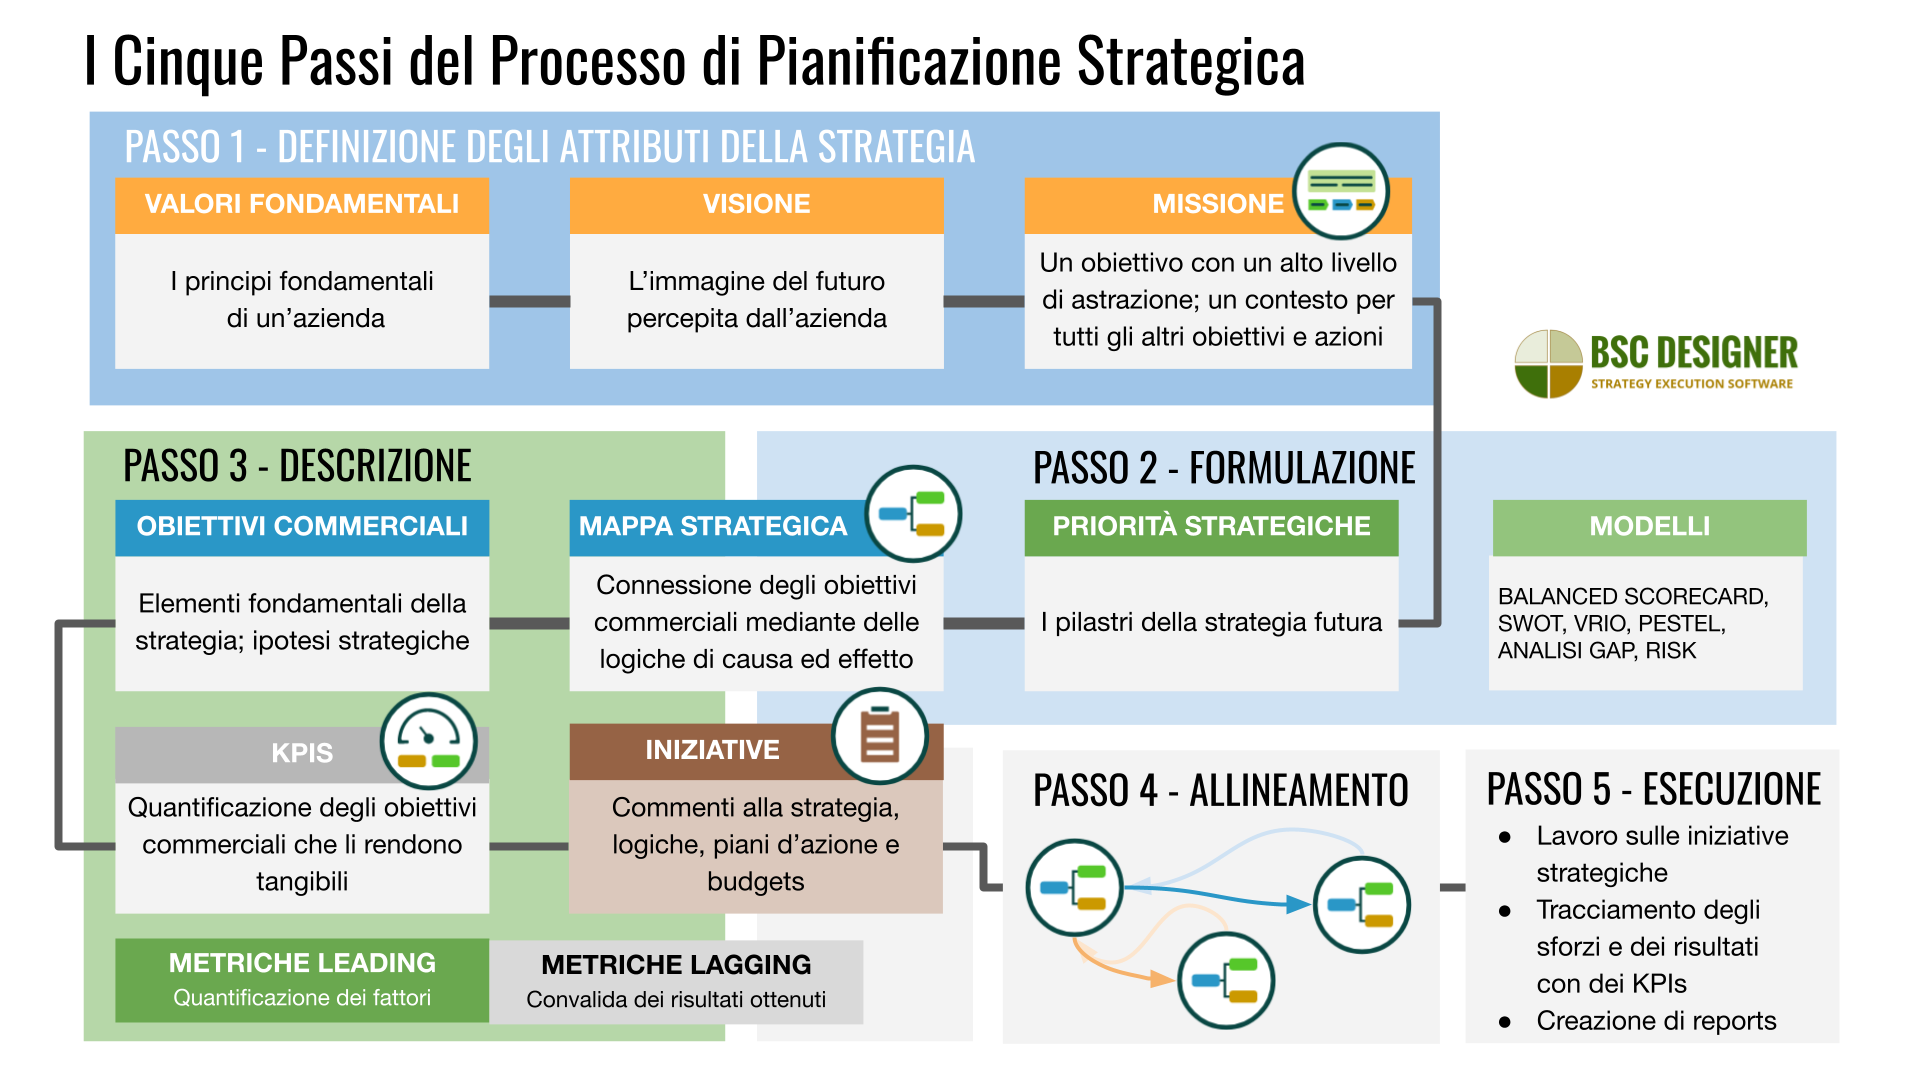 5 fasi del processo di pianificazione strategica dalla definizione di valori, visione e missione alla descrizione della strategia su mappe strategiche con obiettivi aziendali, KPI e iniziative. 